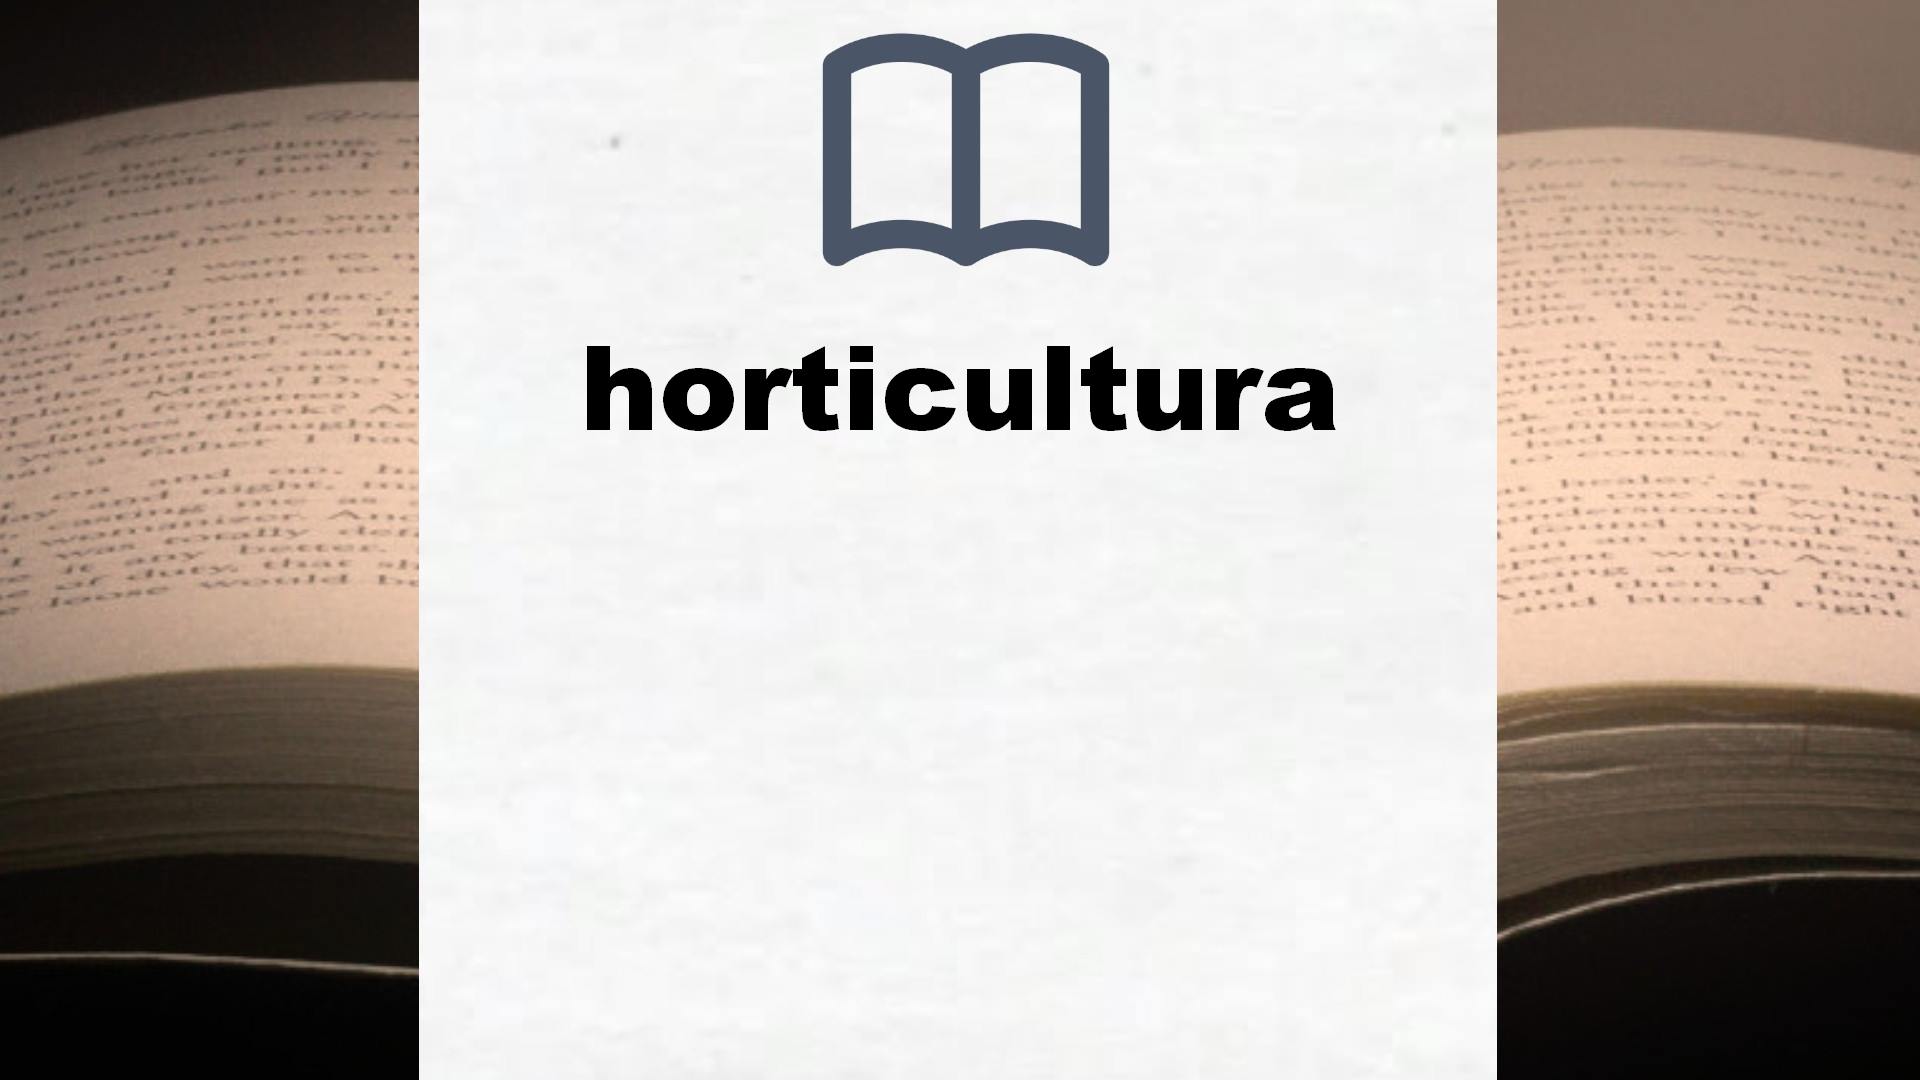 Libros sobre horticultura